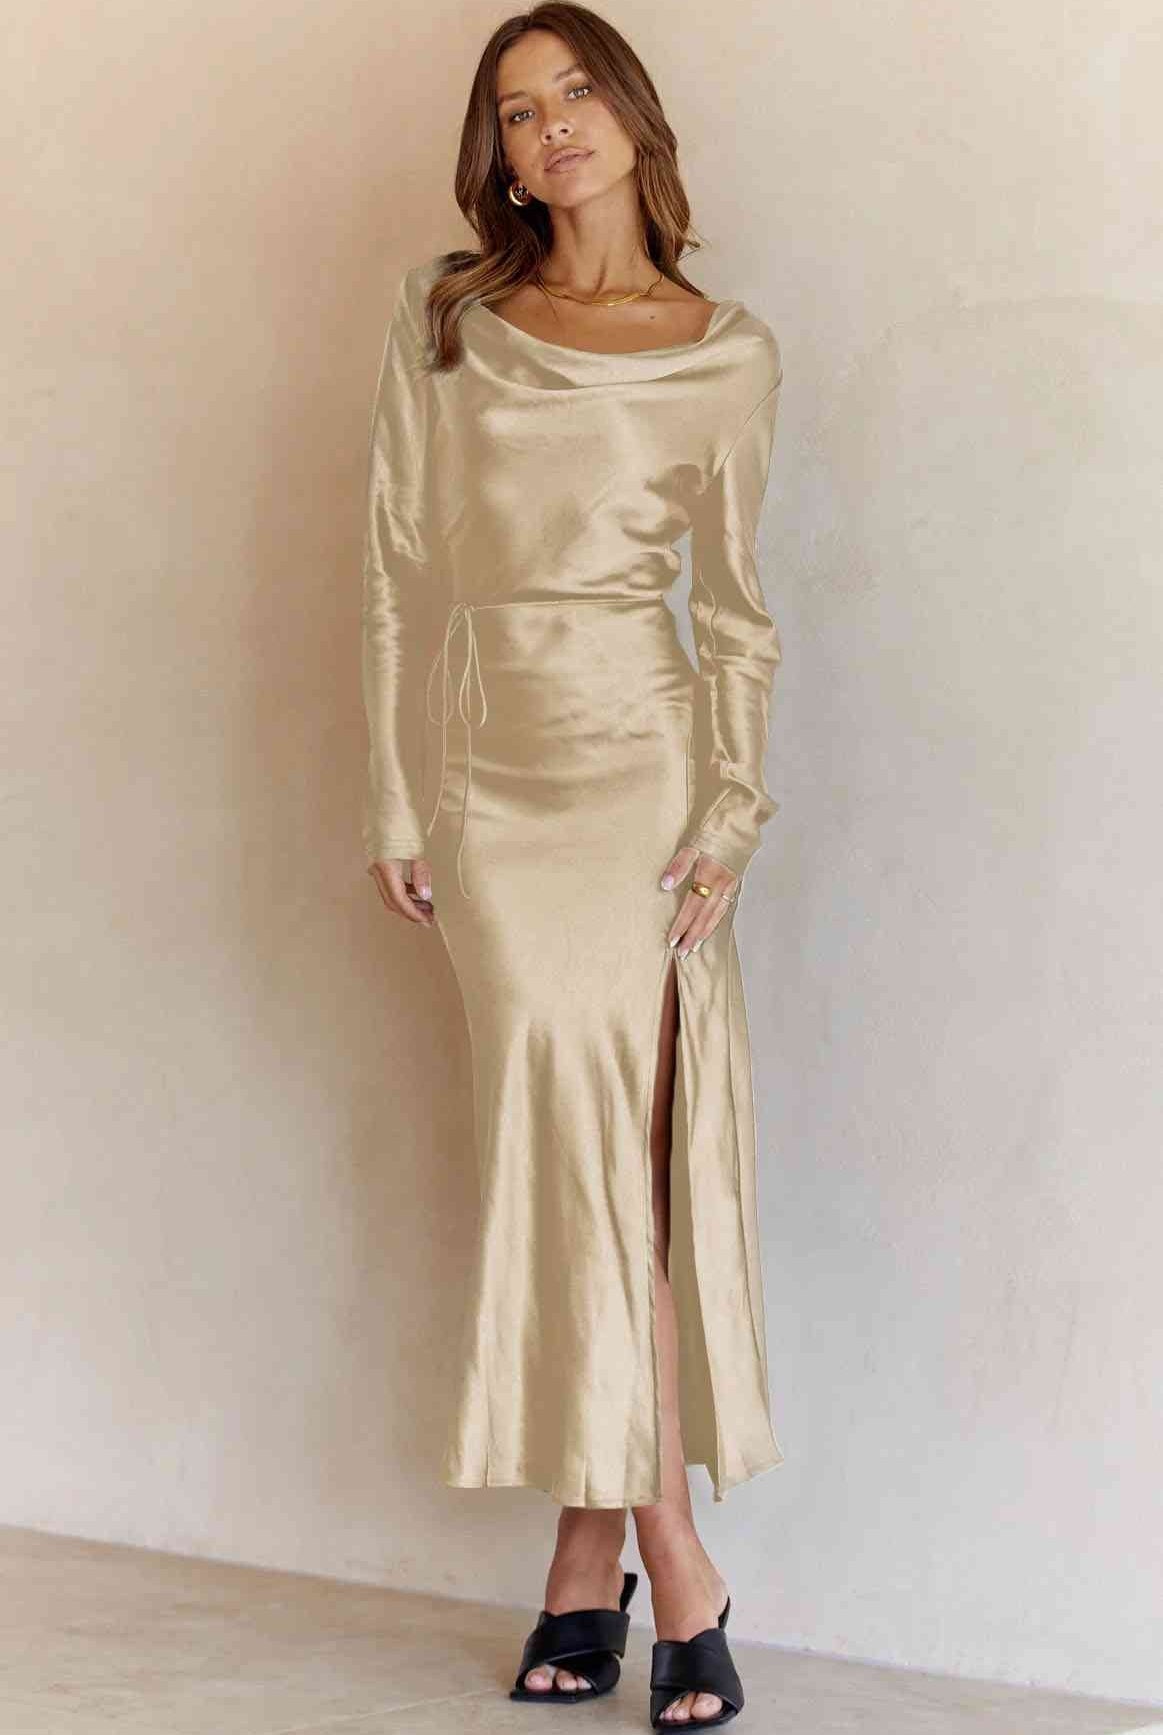 Cowl Neck Long Sleeve Maxi Dress - GemThreads Boutique Cowl Neck Long Sleeve Maxi Dress